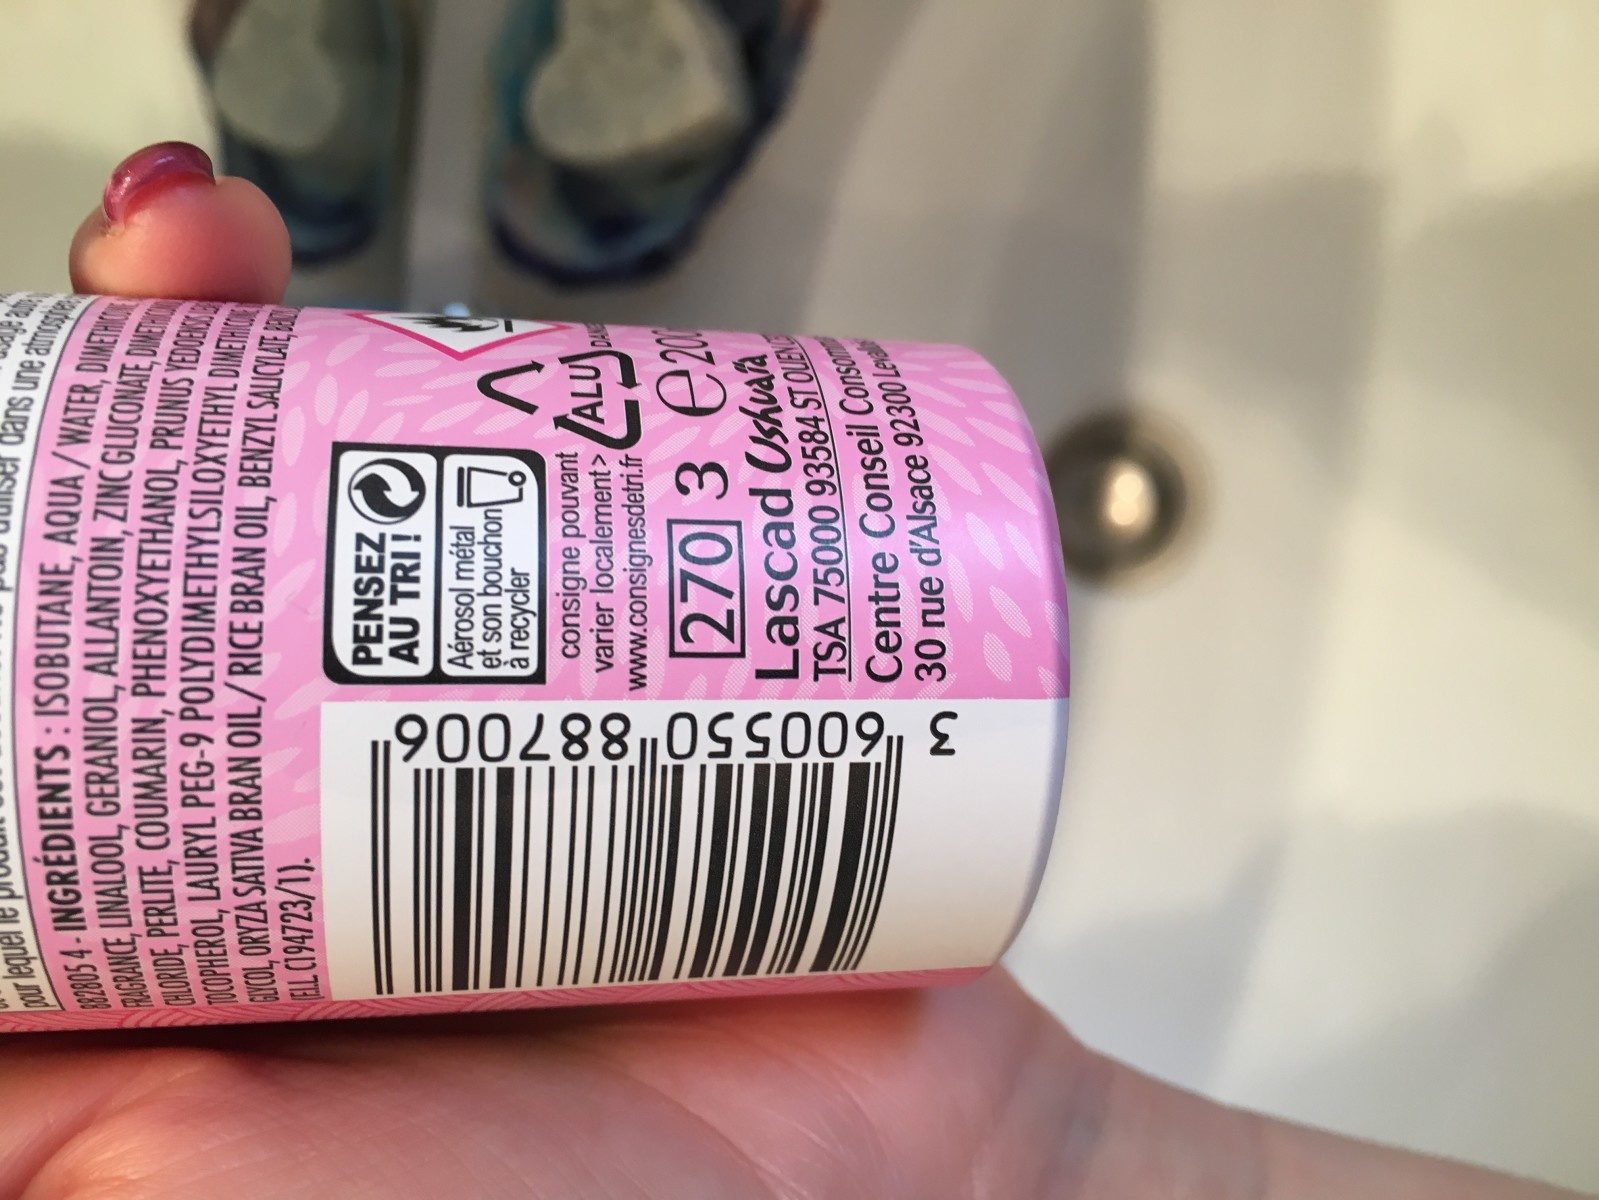 Déodorant Ushuaia - Douceur du Japon au Lait de riz/fleur Sakura - Inhaltsstoffe - fr